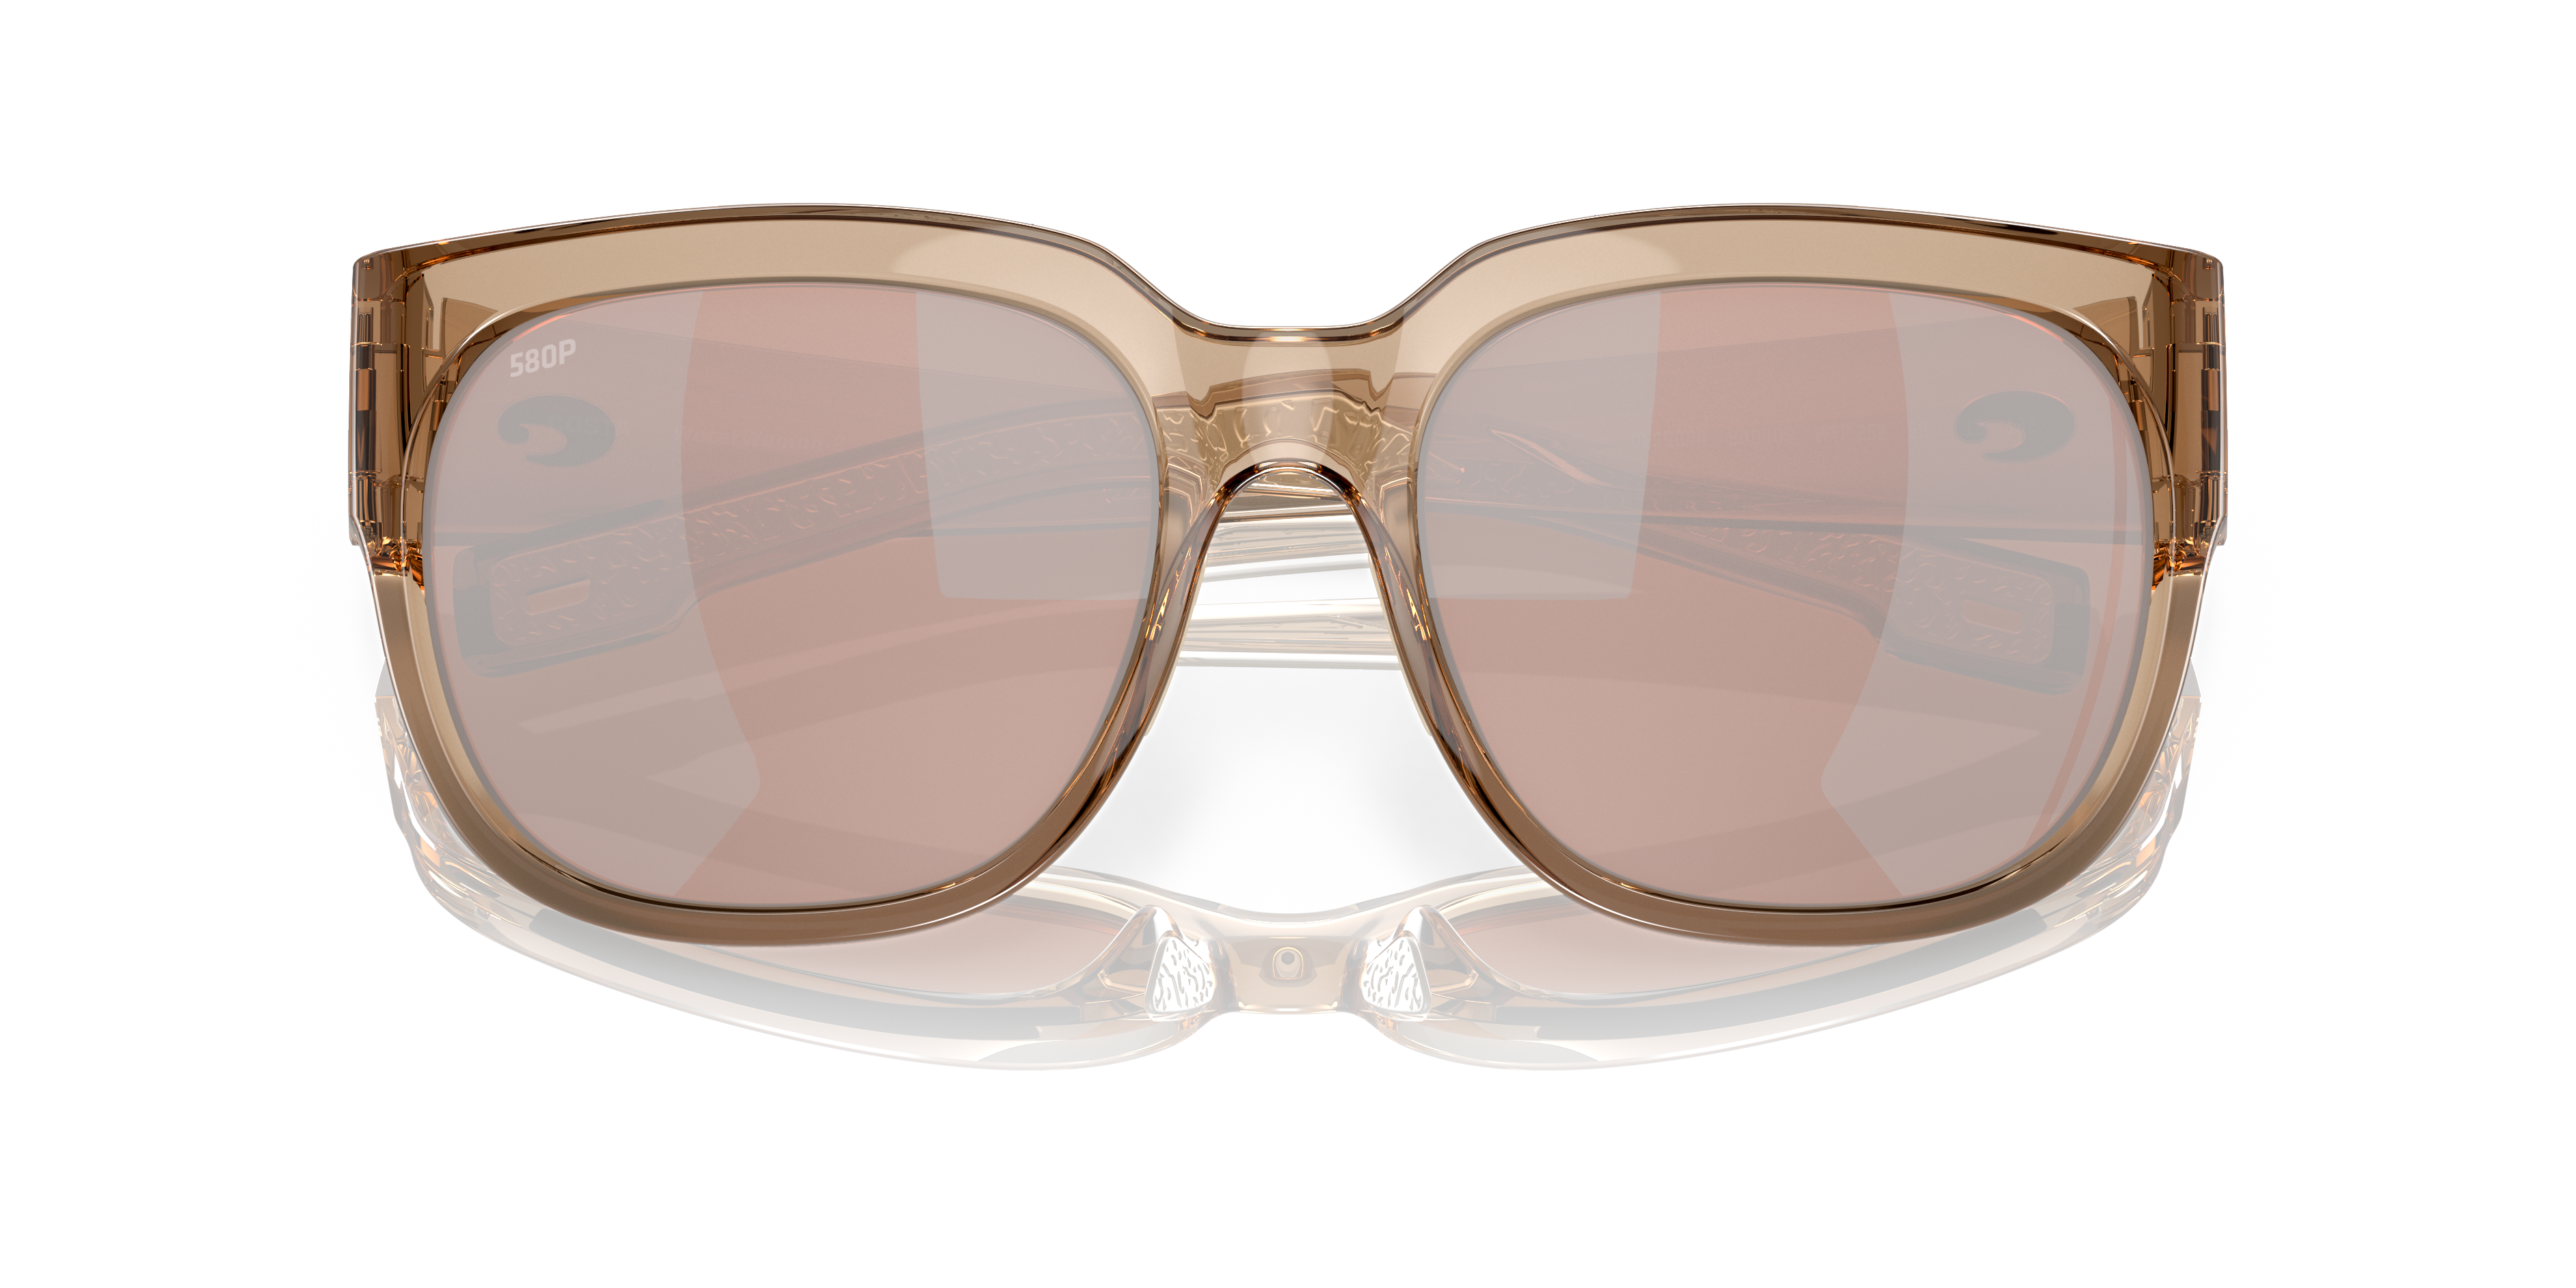 Waterwoman 2 Polarized Sunglasses in Copper Silver Mirror | Costa